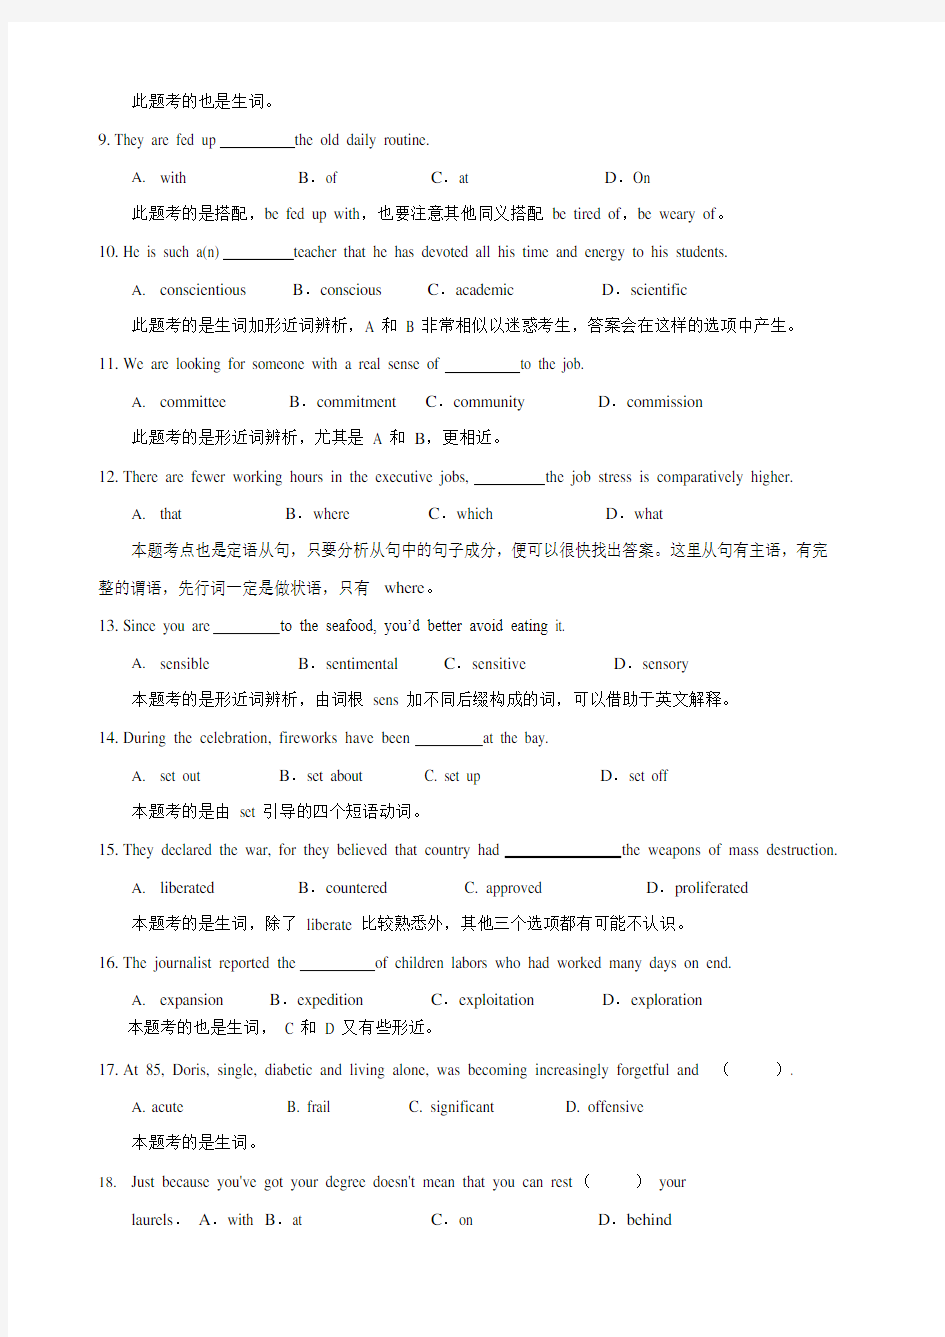 第二讲：上海自主招生语法与词汇(英语).doc(可编辑修改word版)